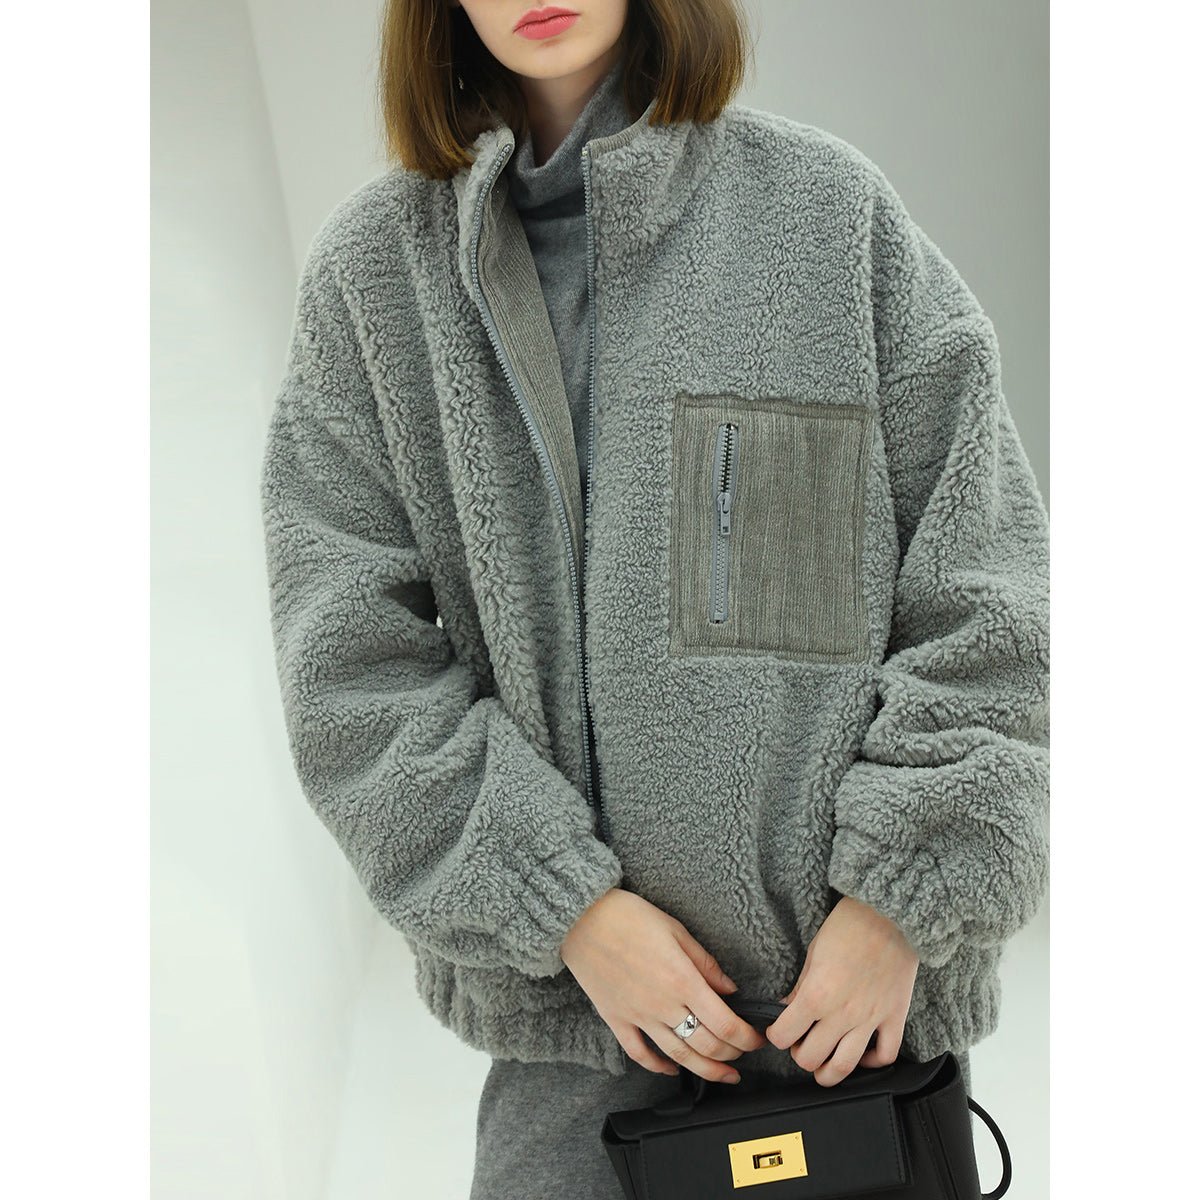 Fuzzy Cozy Zip Up Grey Plush Jacket - 0cm